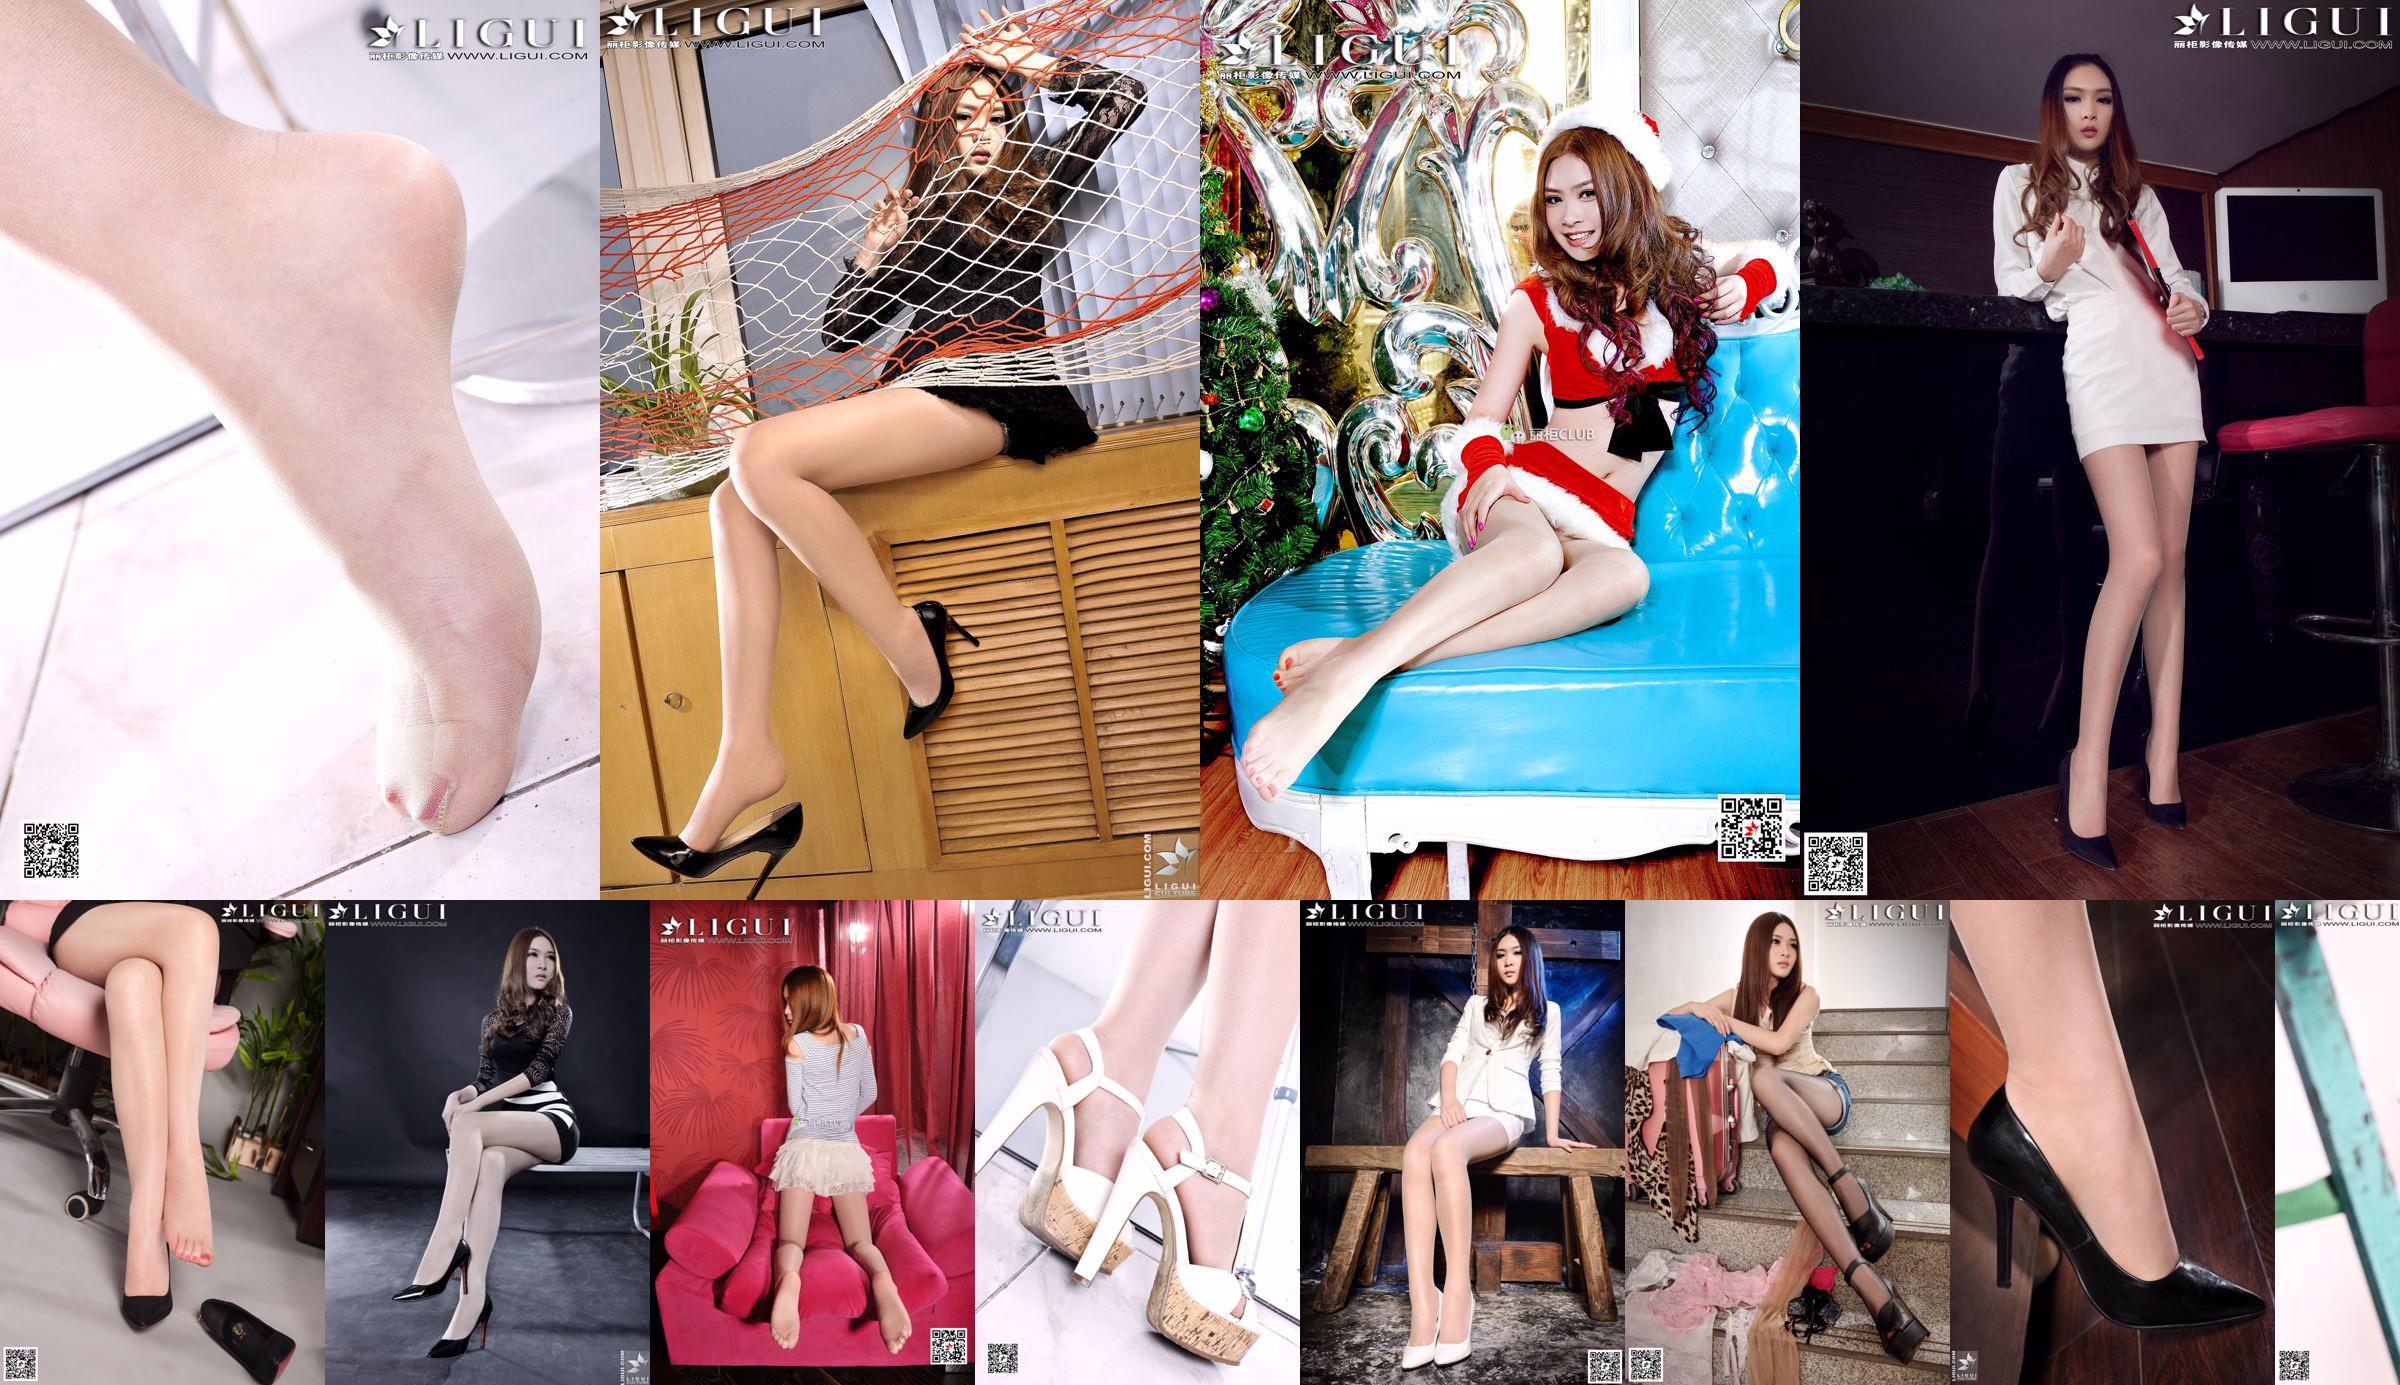 [丽 柜 LiGui] Model Yoona "Hochhackige Füße auf dem Sofa" Wunderschönes Foto mit Beinen und Jadefüßen No.7bc38c Seite 1